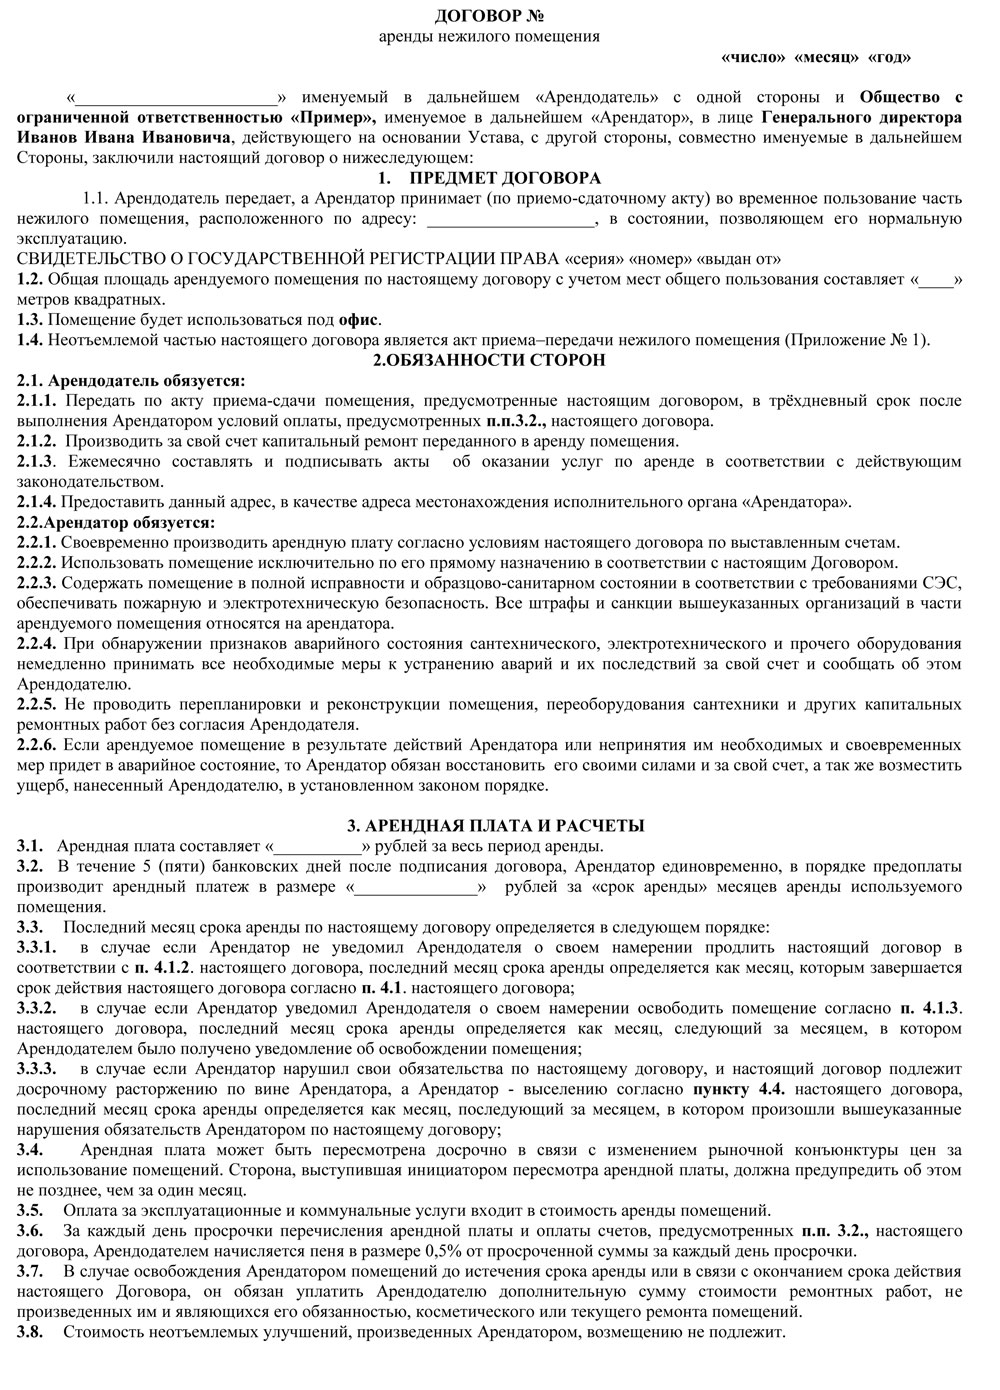 Договор аренды для регистрации юридического адреса аренда юр адреса москва